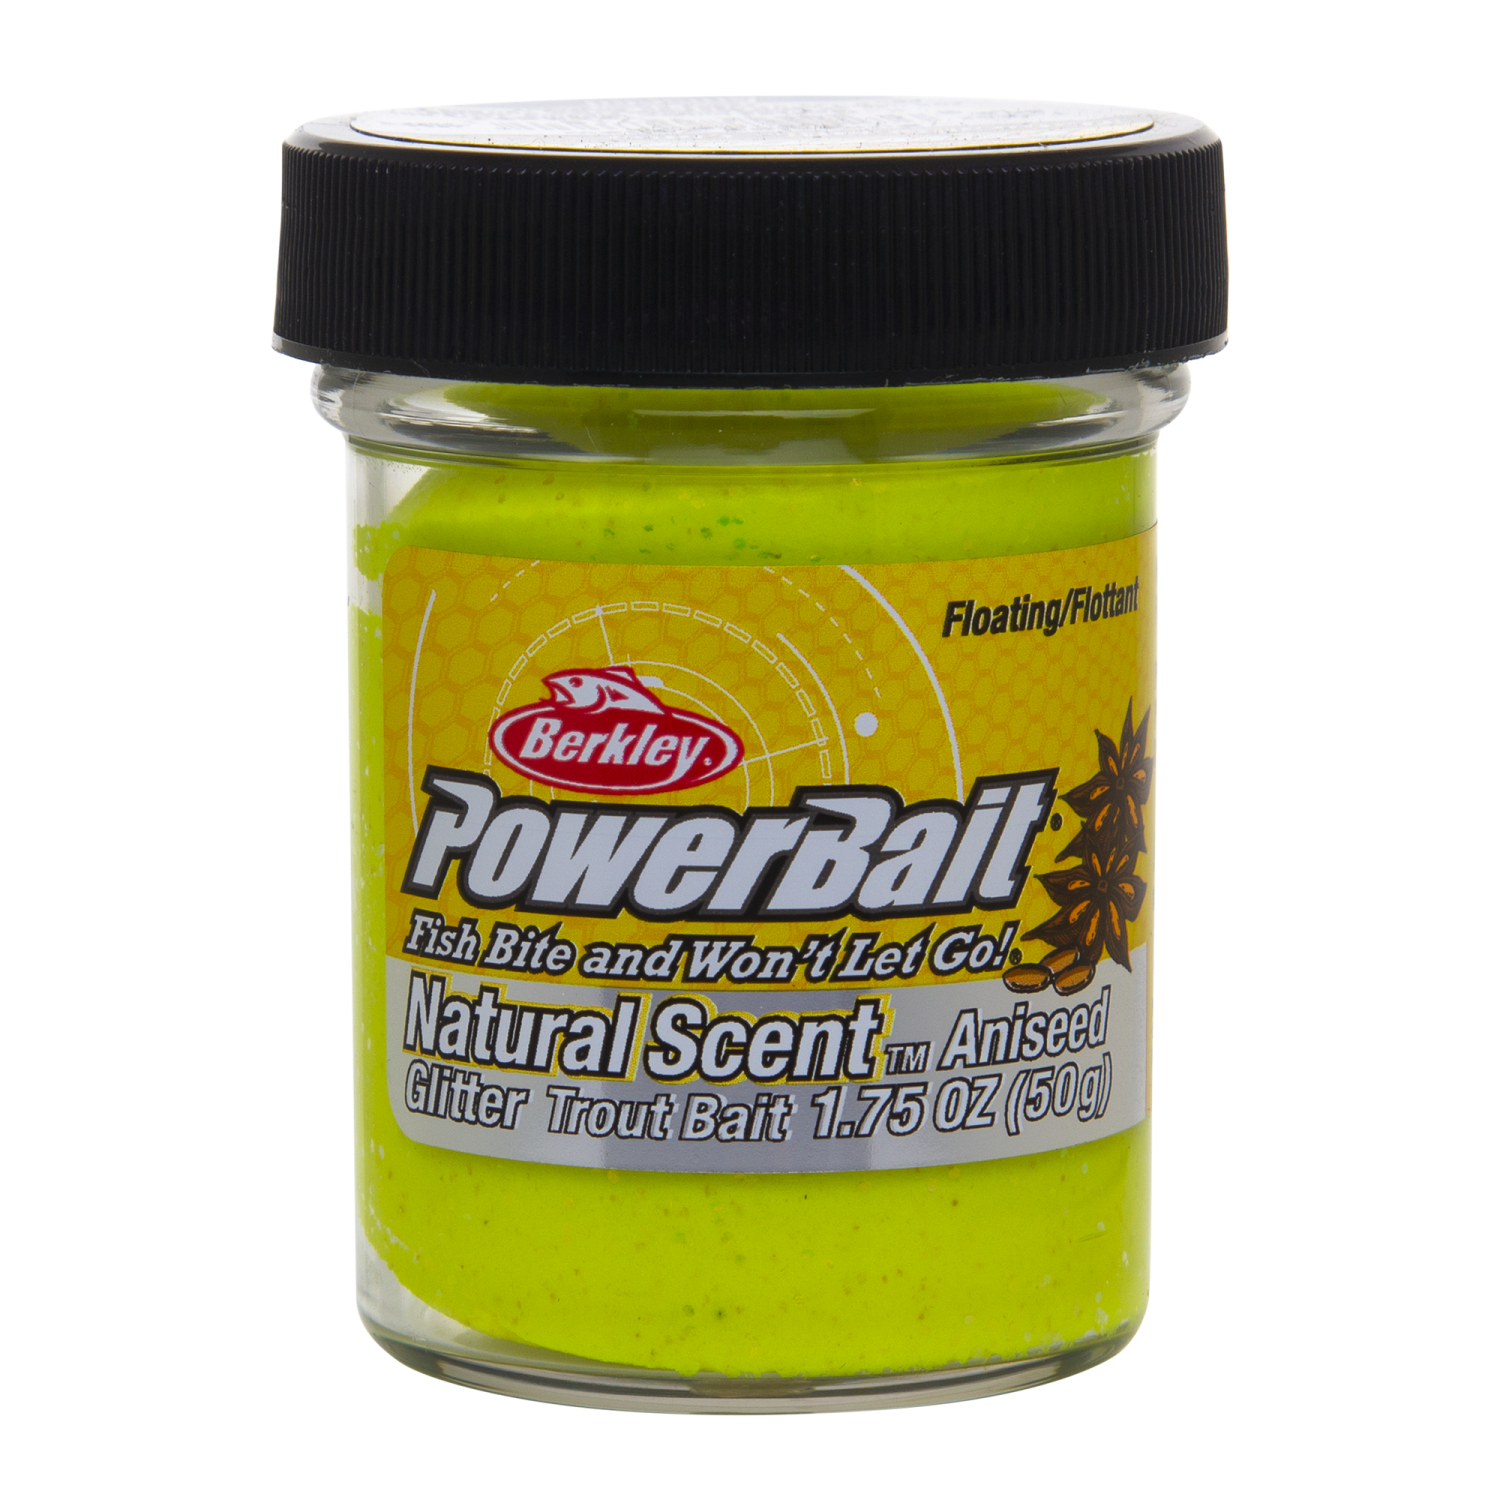 Паста форелевая Berkley Powerbait Natural Scent Glitter Trout Bait 50гр Aniseed #Sunshine Yellow berkley форелевая паста powerbait extra scent glitter trout bait trout pellet